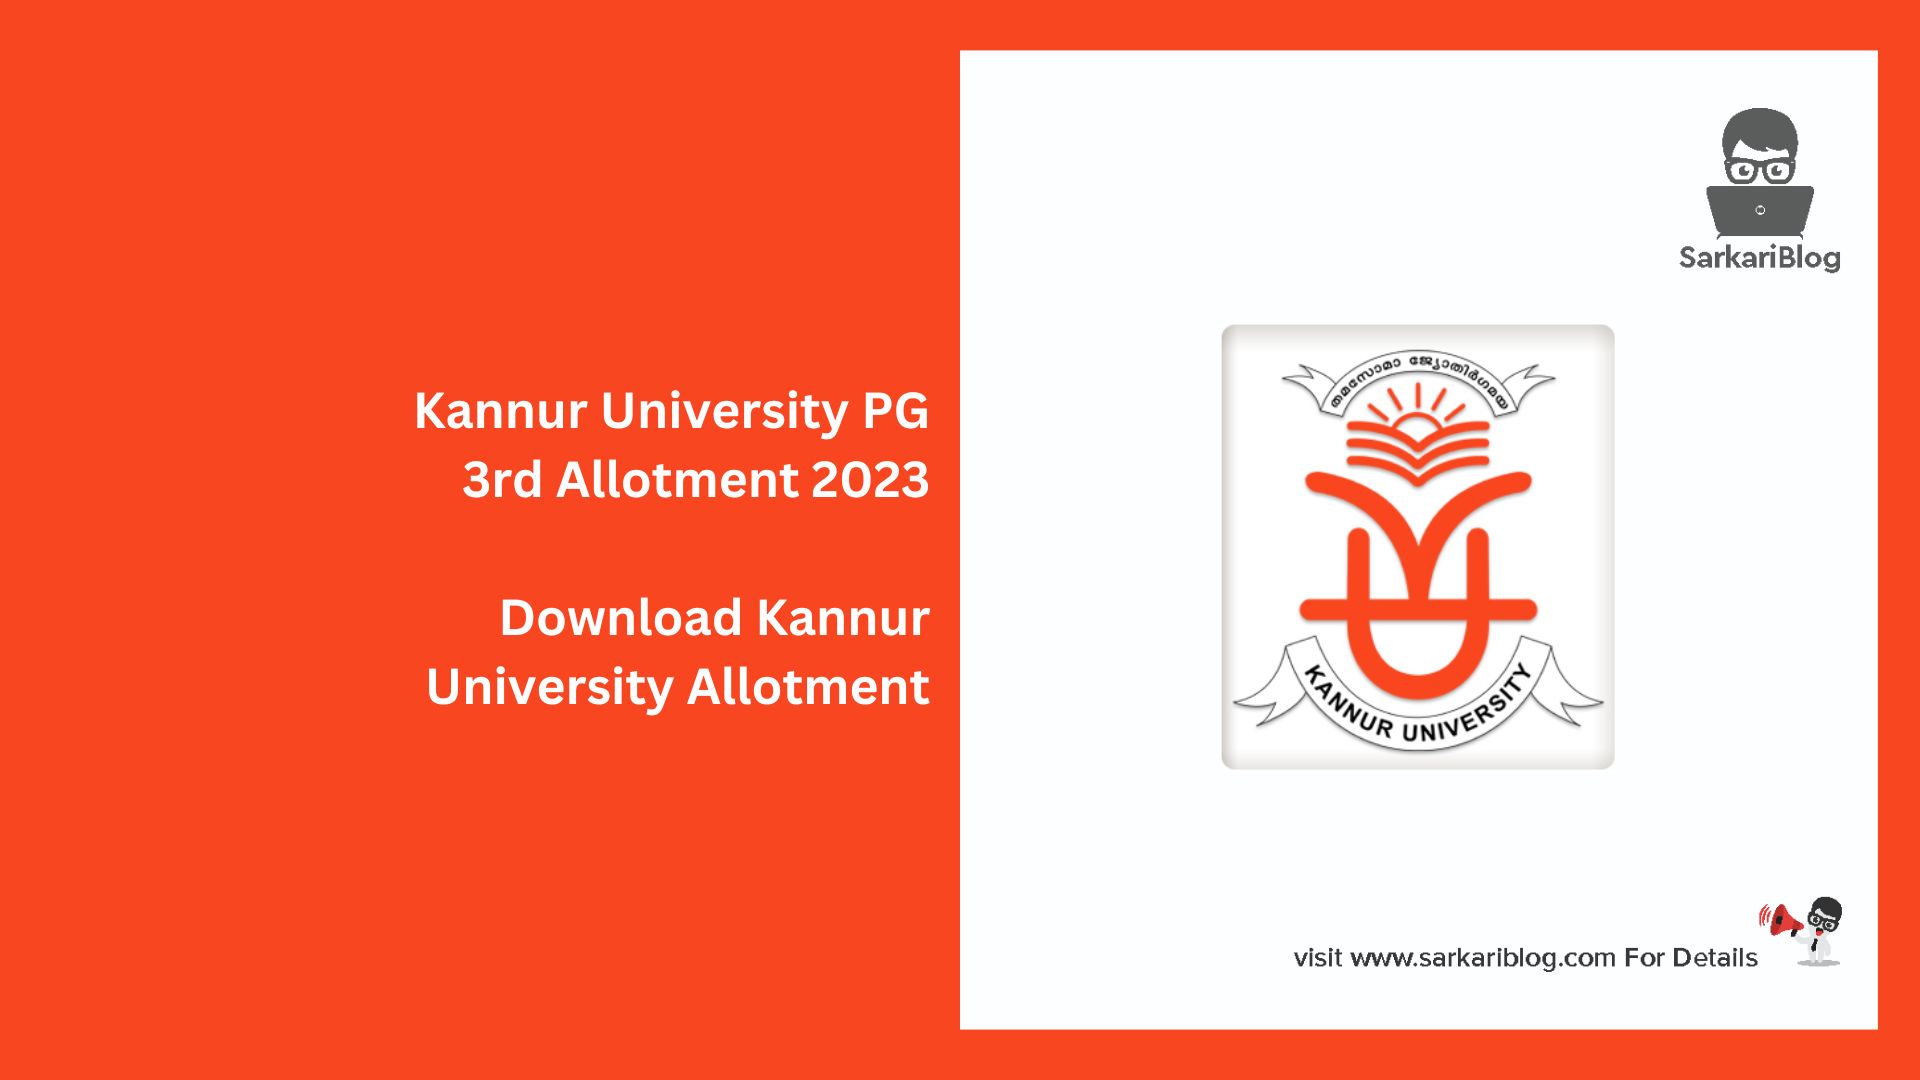 Kannur University PG 3rd Allotment 2023